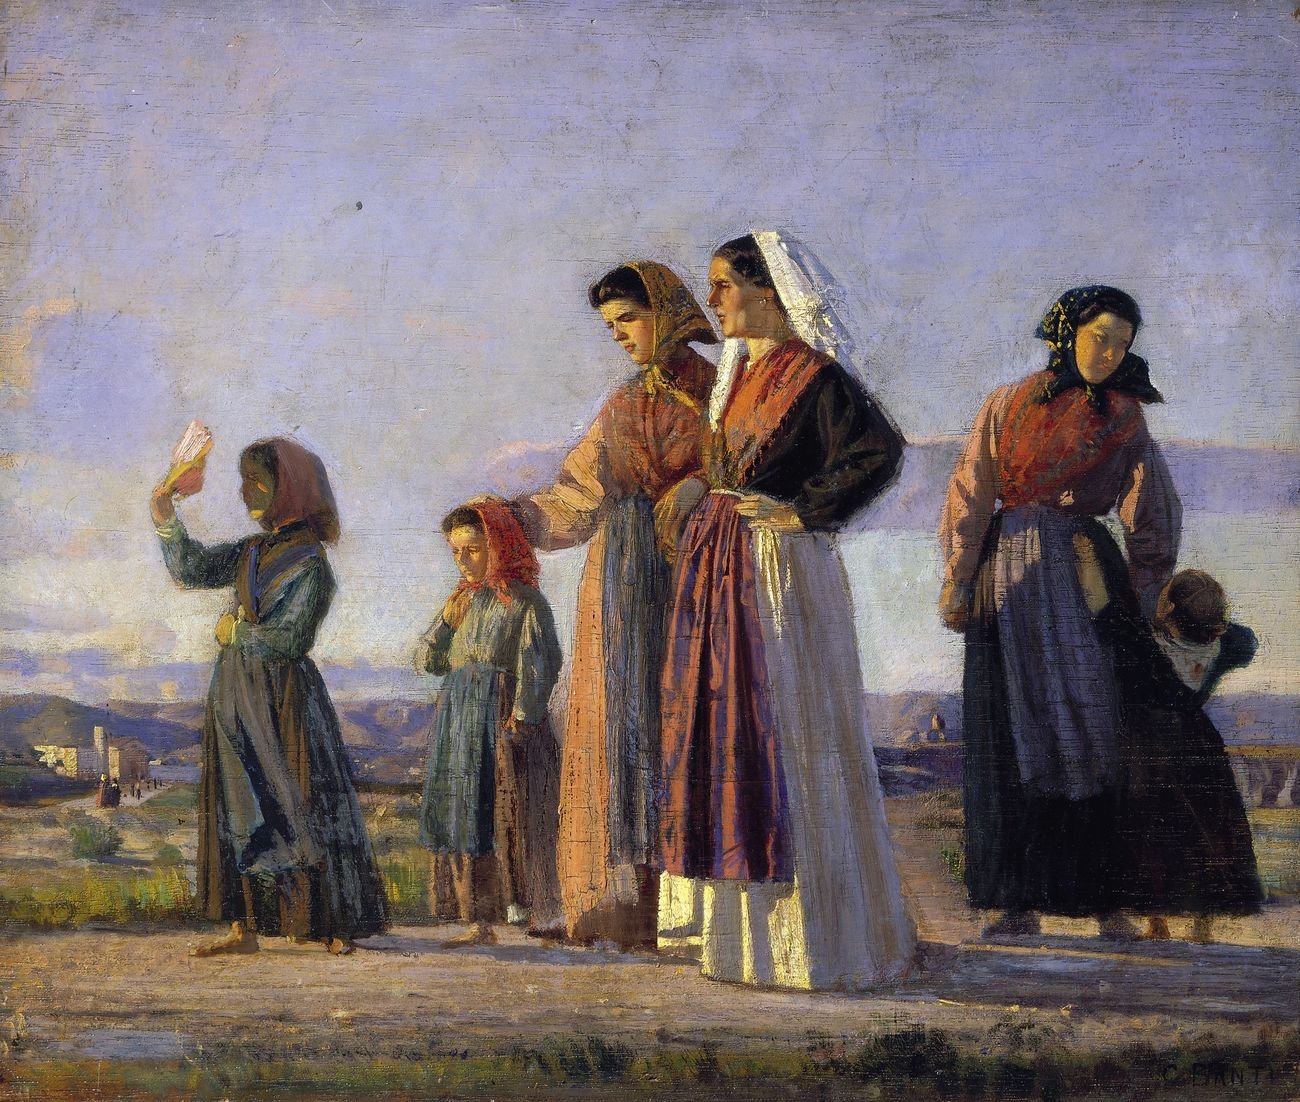 Cristiano Banti, In via per la chiesa (il ritorno dalla messa), 1865 ca. Courtesy Società di Belle Arti, Viareggio